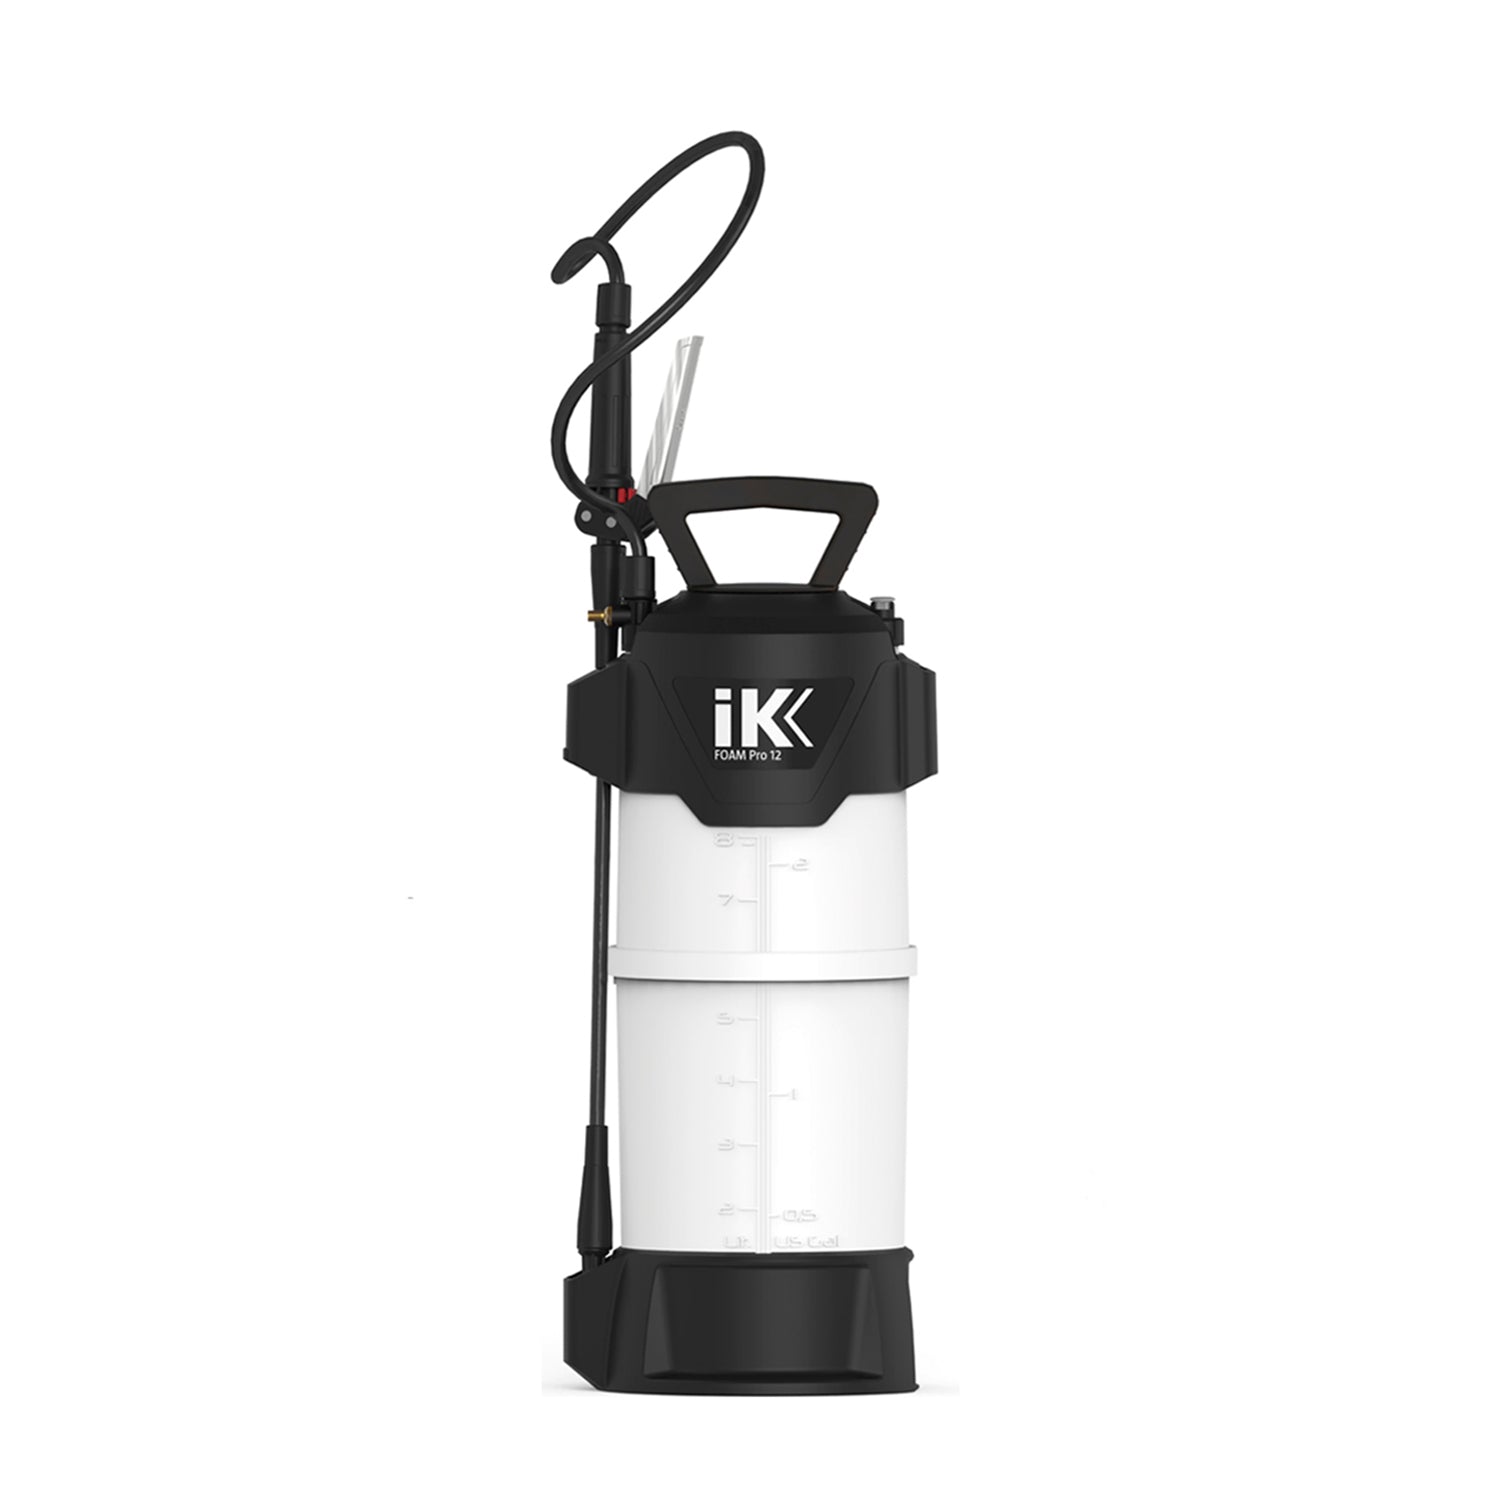 ik-foam-pro-12-sprayer-10-liter-tank